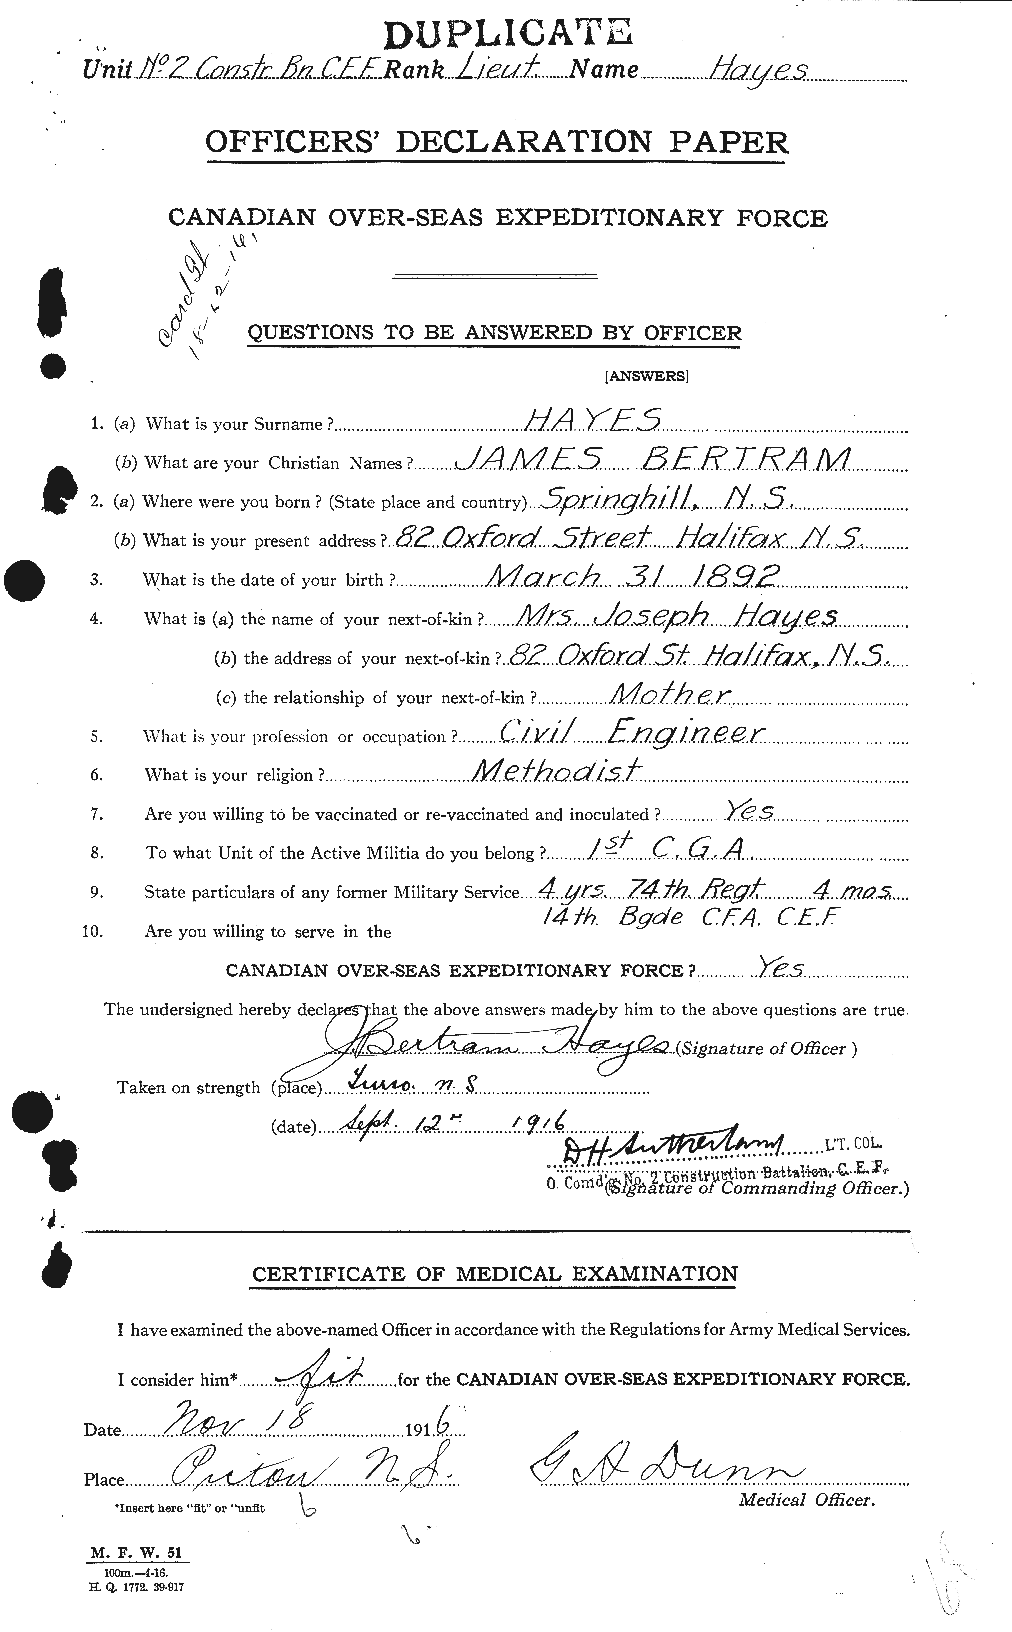 Dossiers du Personnel de la Première Guerre mondiale - CEC 385537a